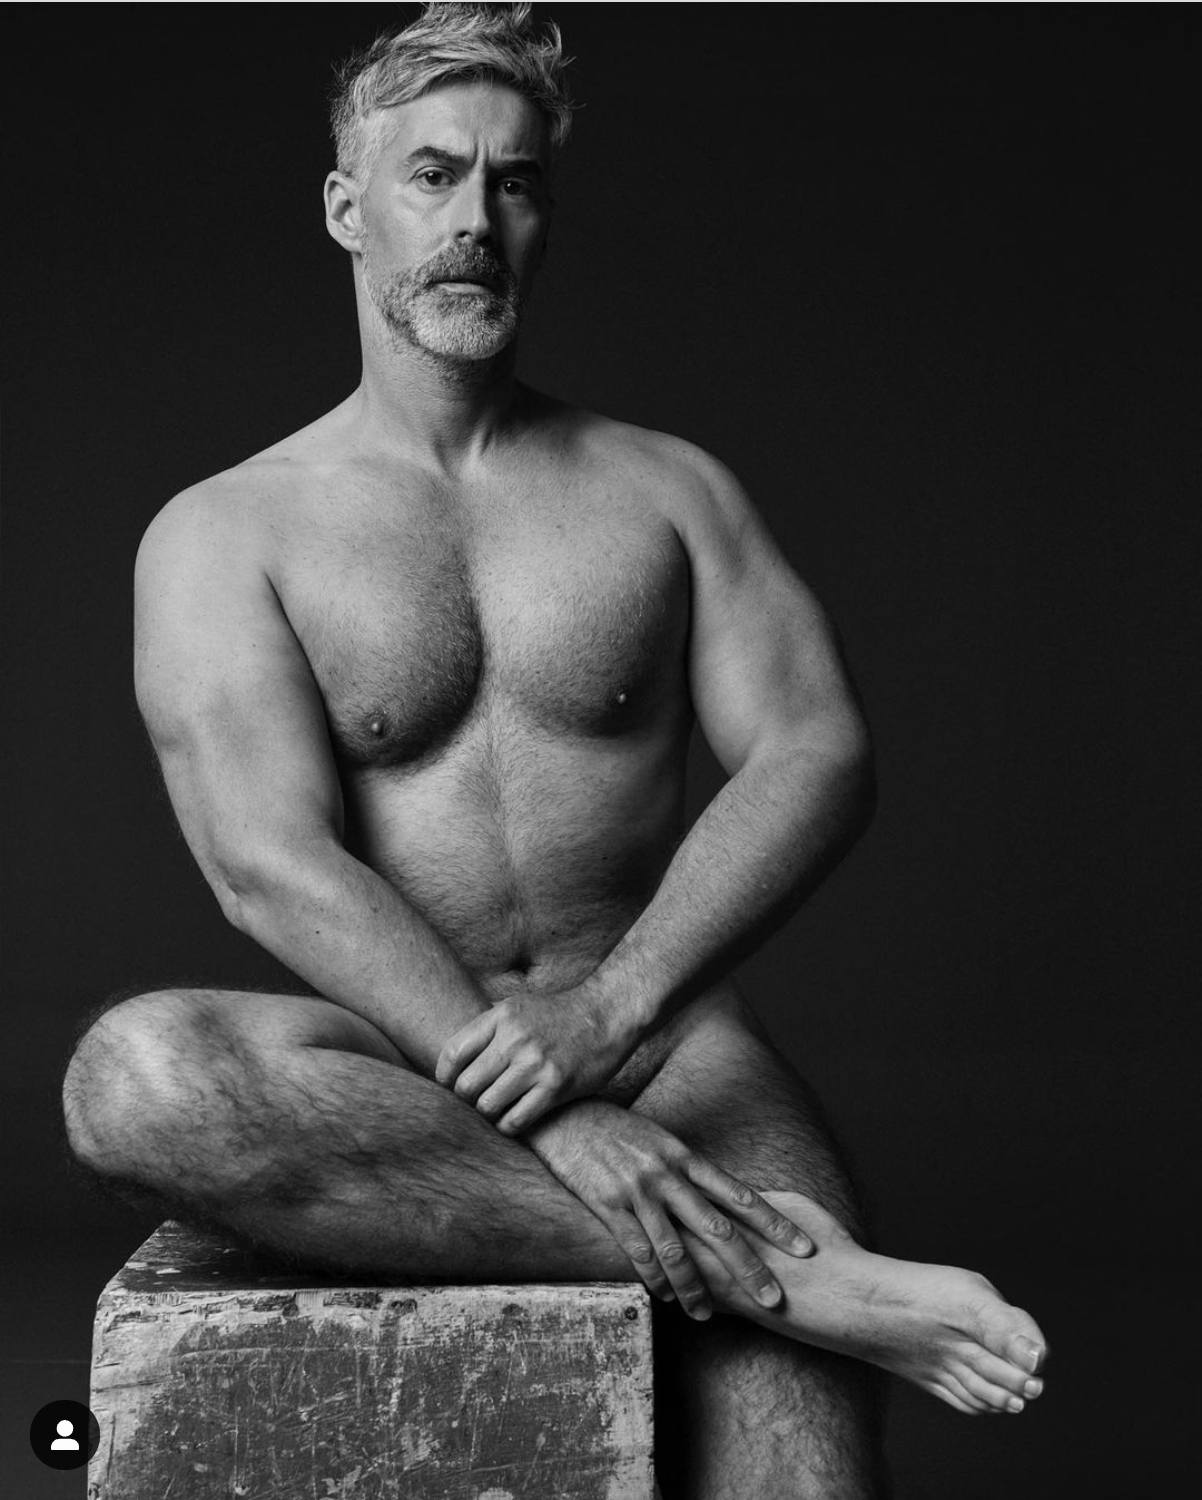 Carlos Díaz protagoniza sesión fotográfica completamente desnudo: “un acto  liberador” | Puranoticia.cl